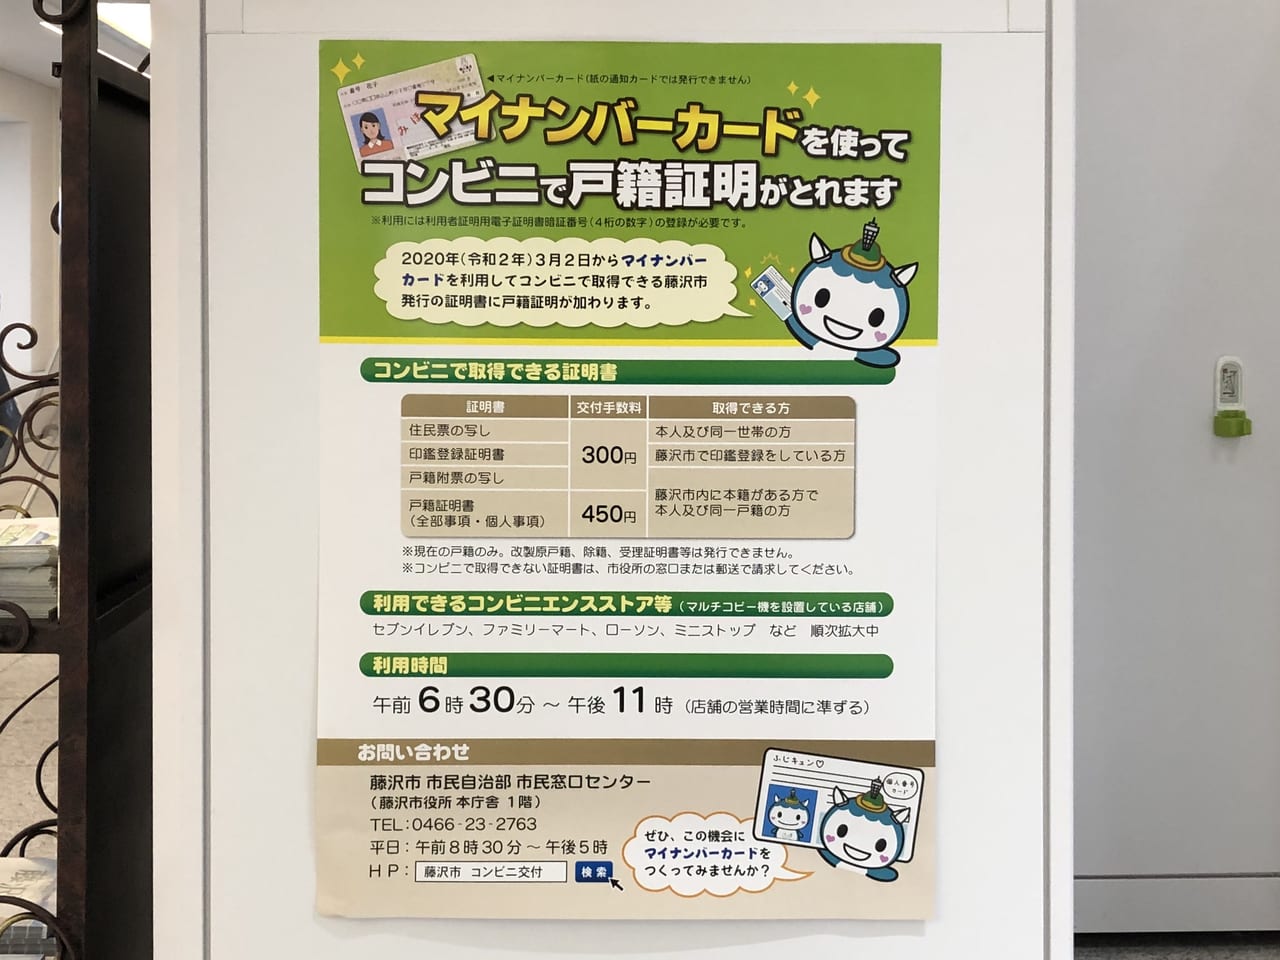 藤沢市 年3月2日から戸籍証明書もコンビニで取得できるようになりました マイナンバーカード利用 号外net 藤沢市